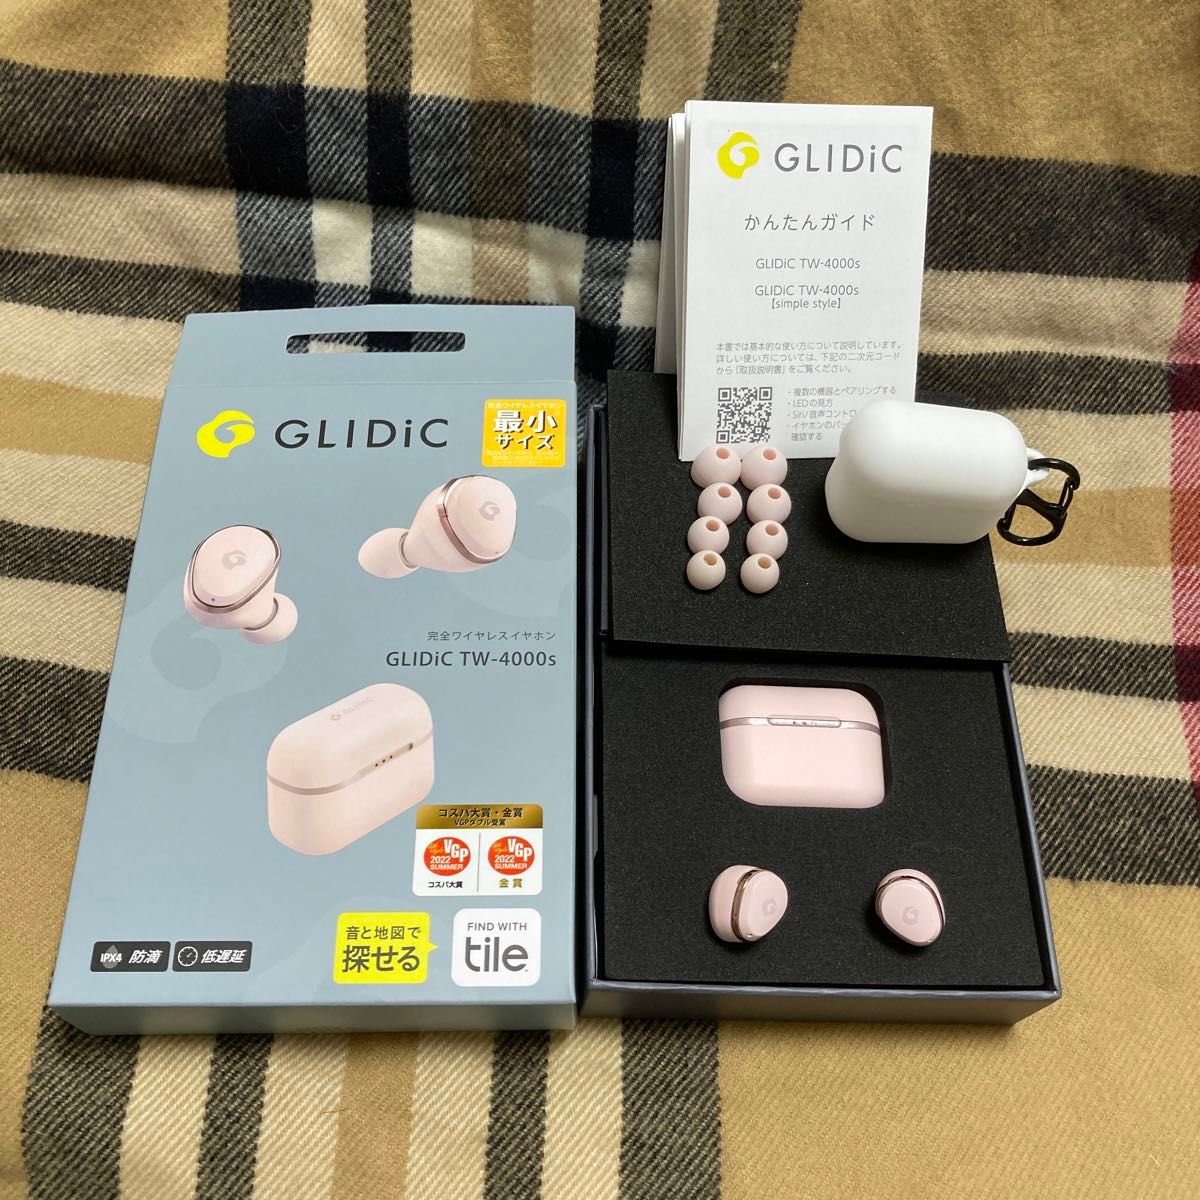 ☆GLDIC TW-4000s ピンク最小ワイヤレスイヤホン☆ GLIDiC Bluetooth